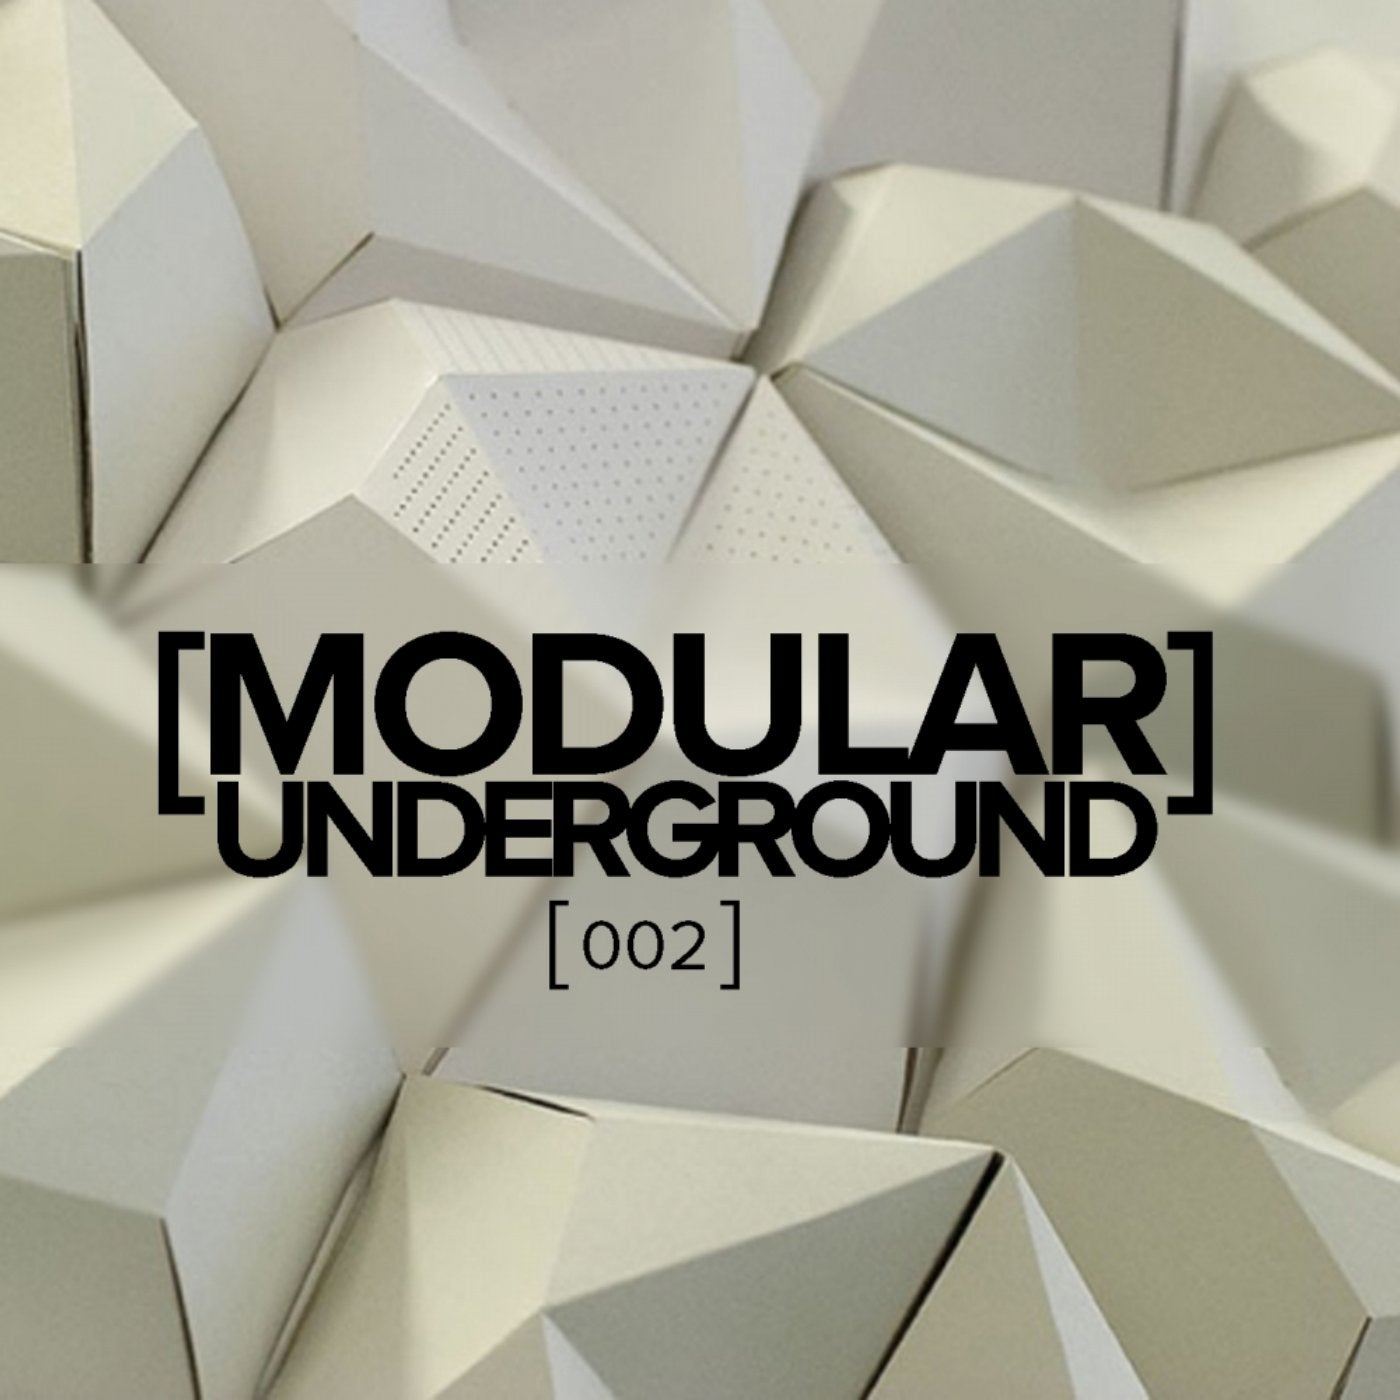 Modular Underground, 002